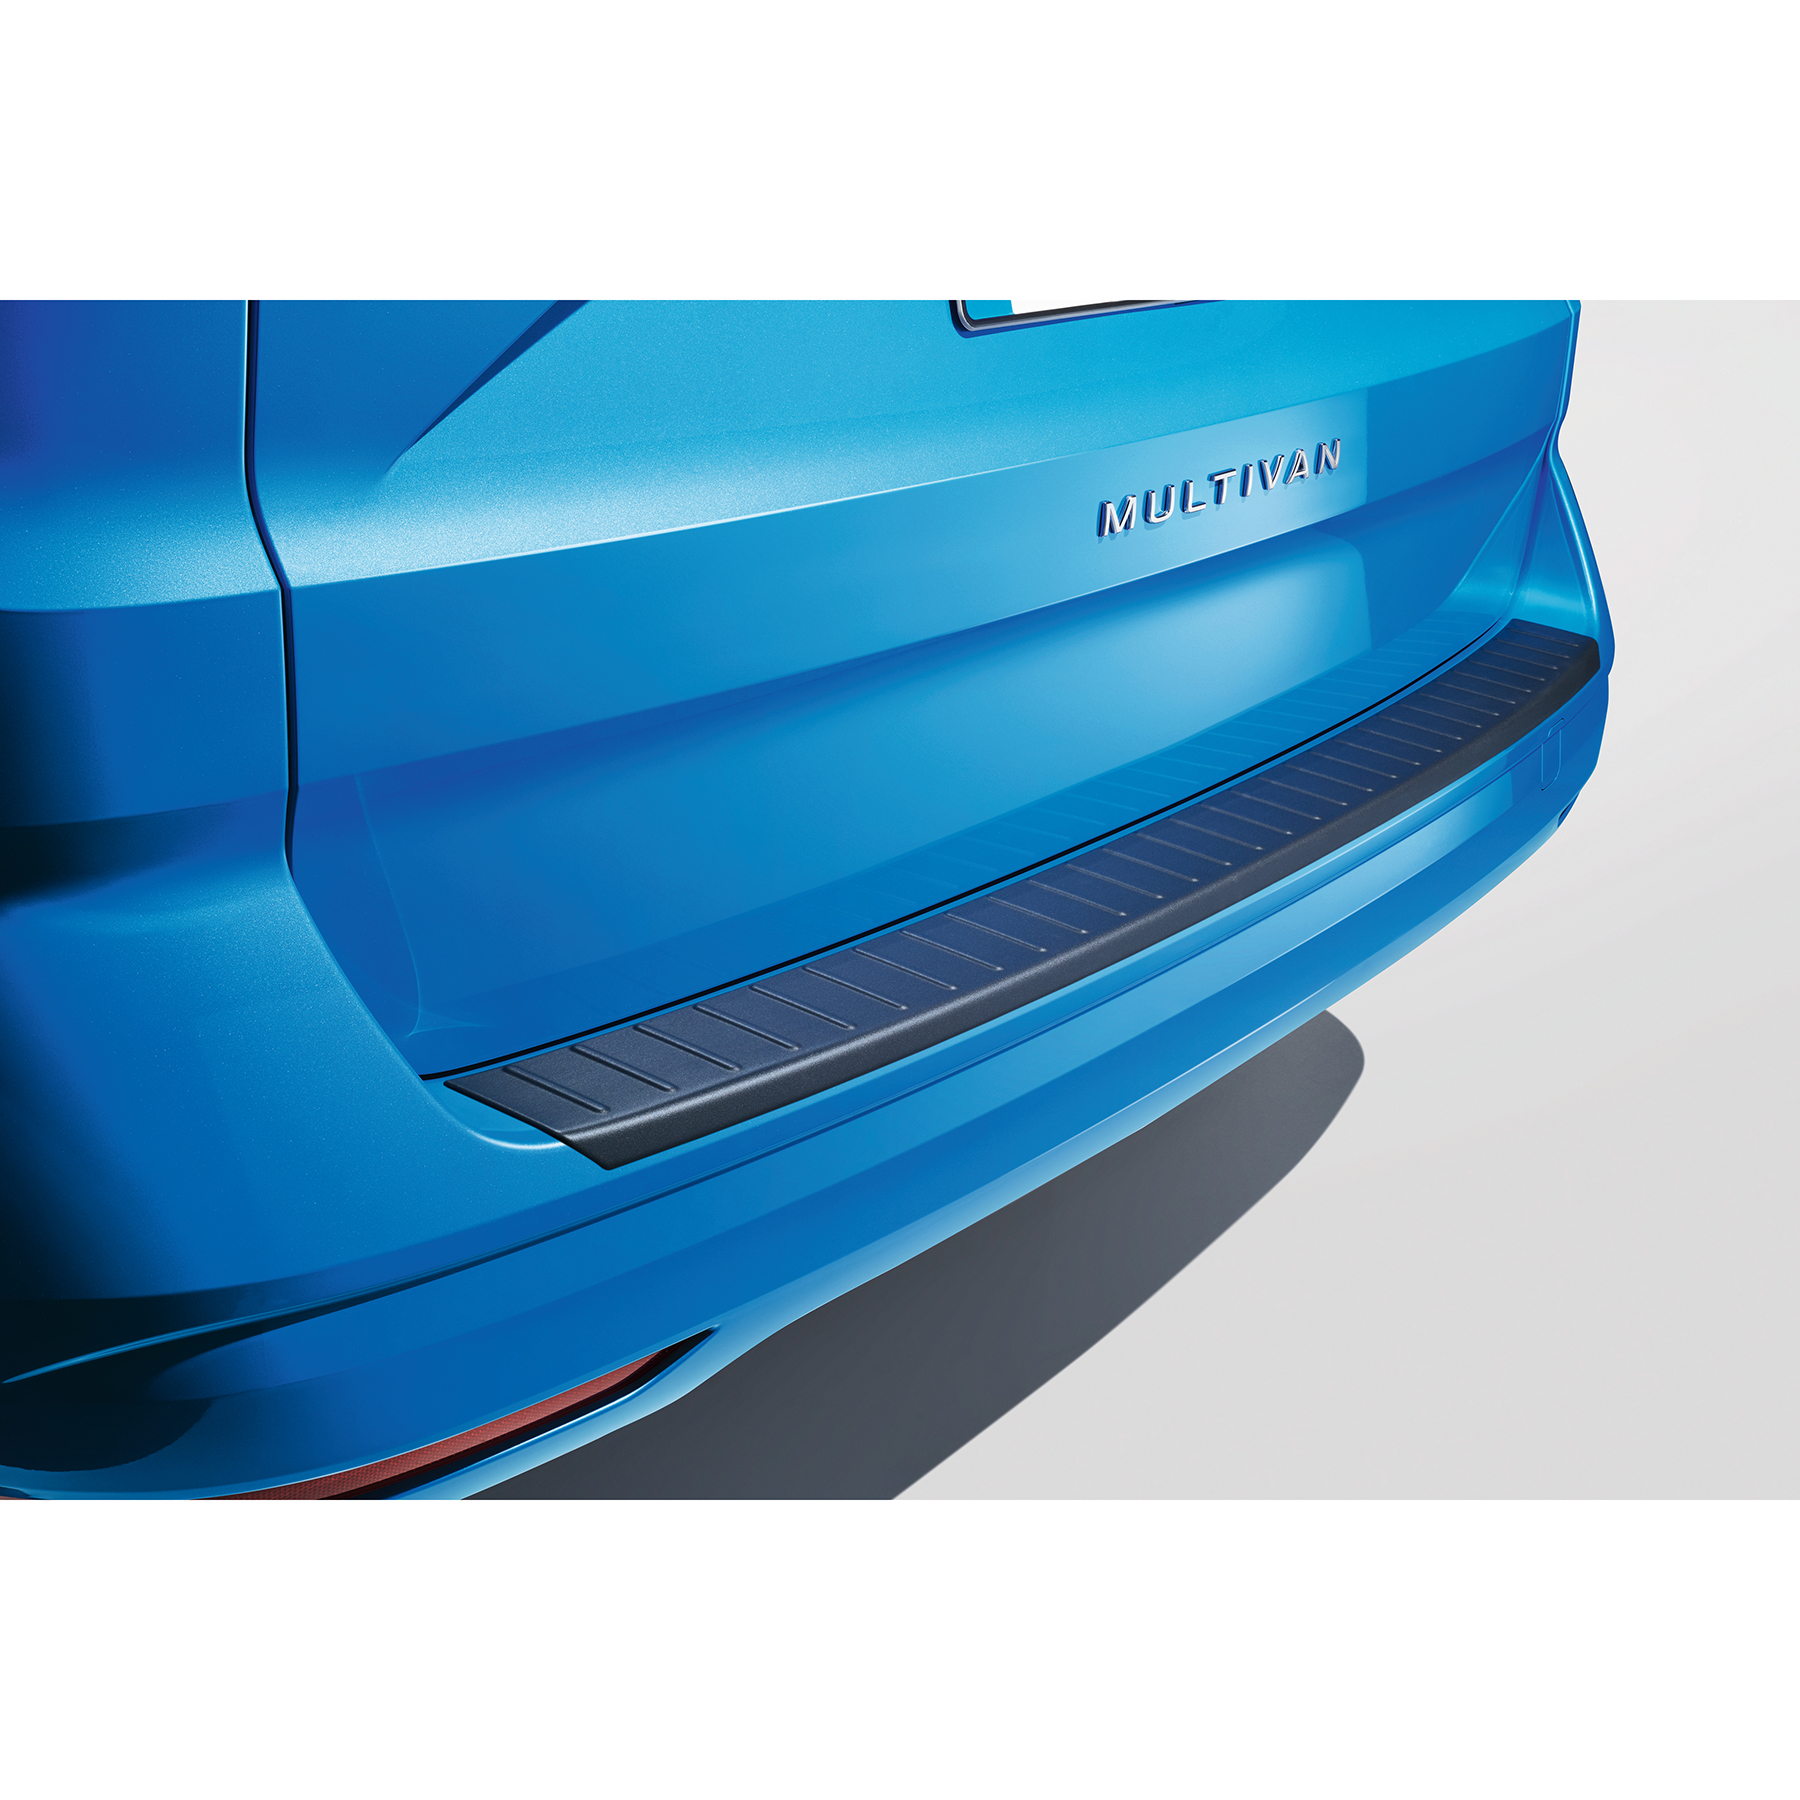 Ladekantenschutz Premium für VW T5 2003-2015 Edelstahl schwarz gebürst –  E-Parts24